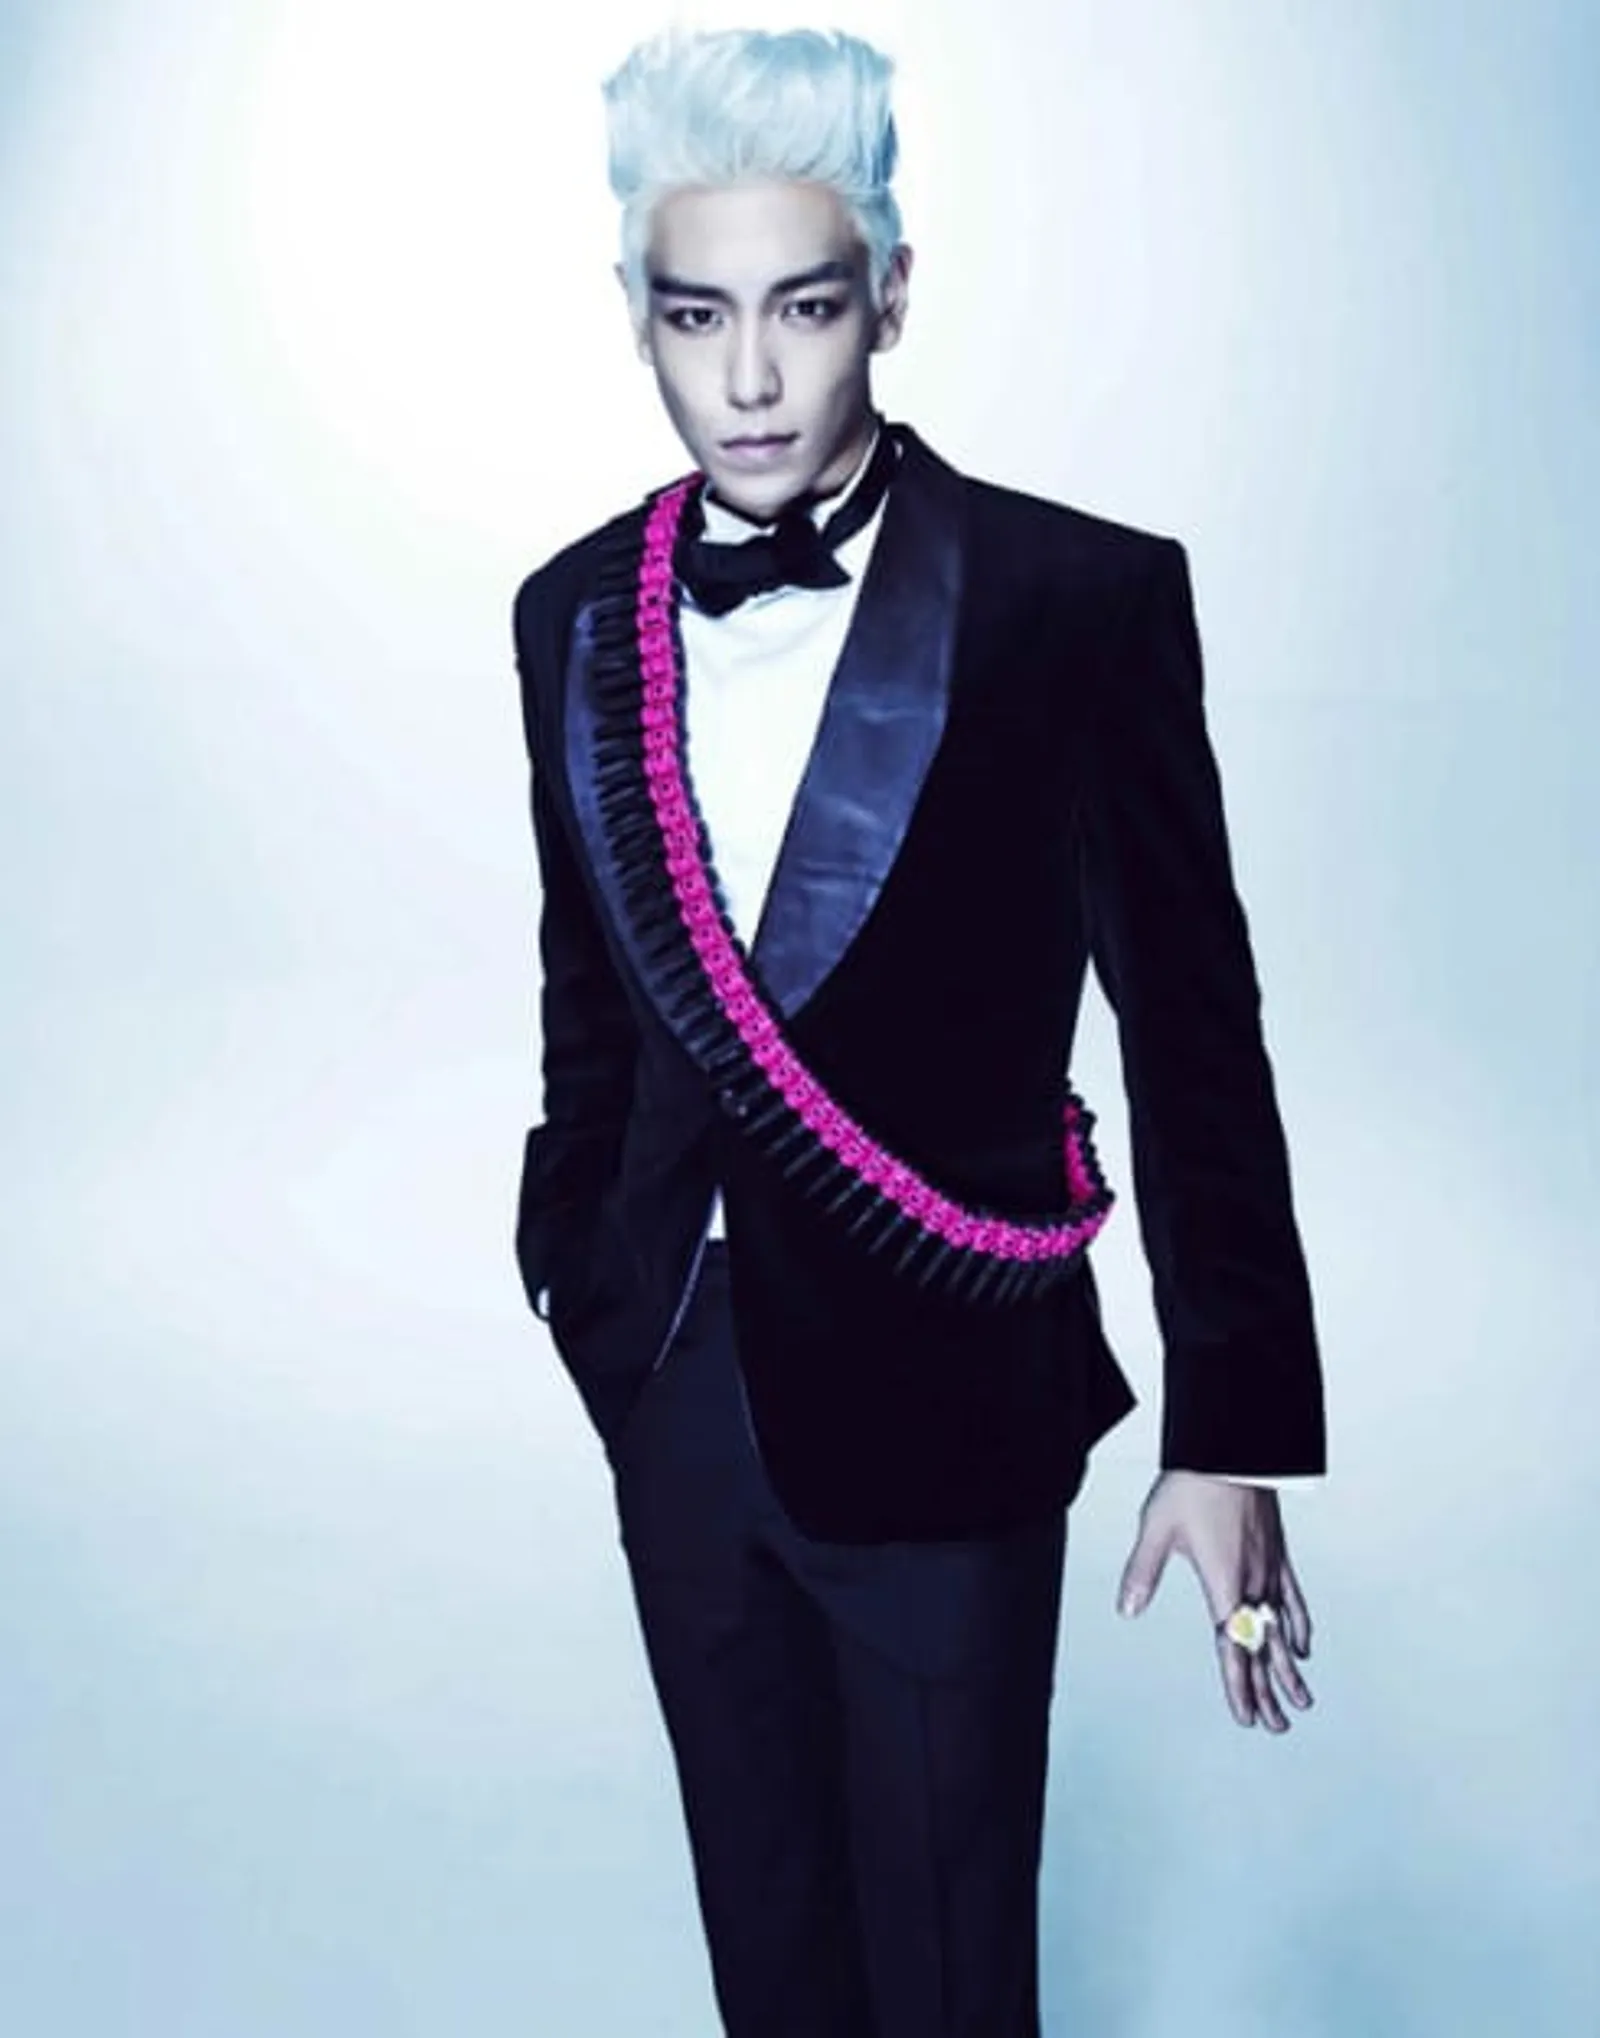 Hengkang dari YG Entertainment, Ini Transformasi Gaya T.O.P BIGBANG